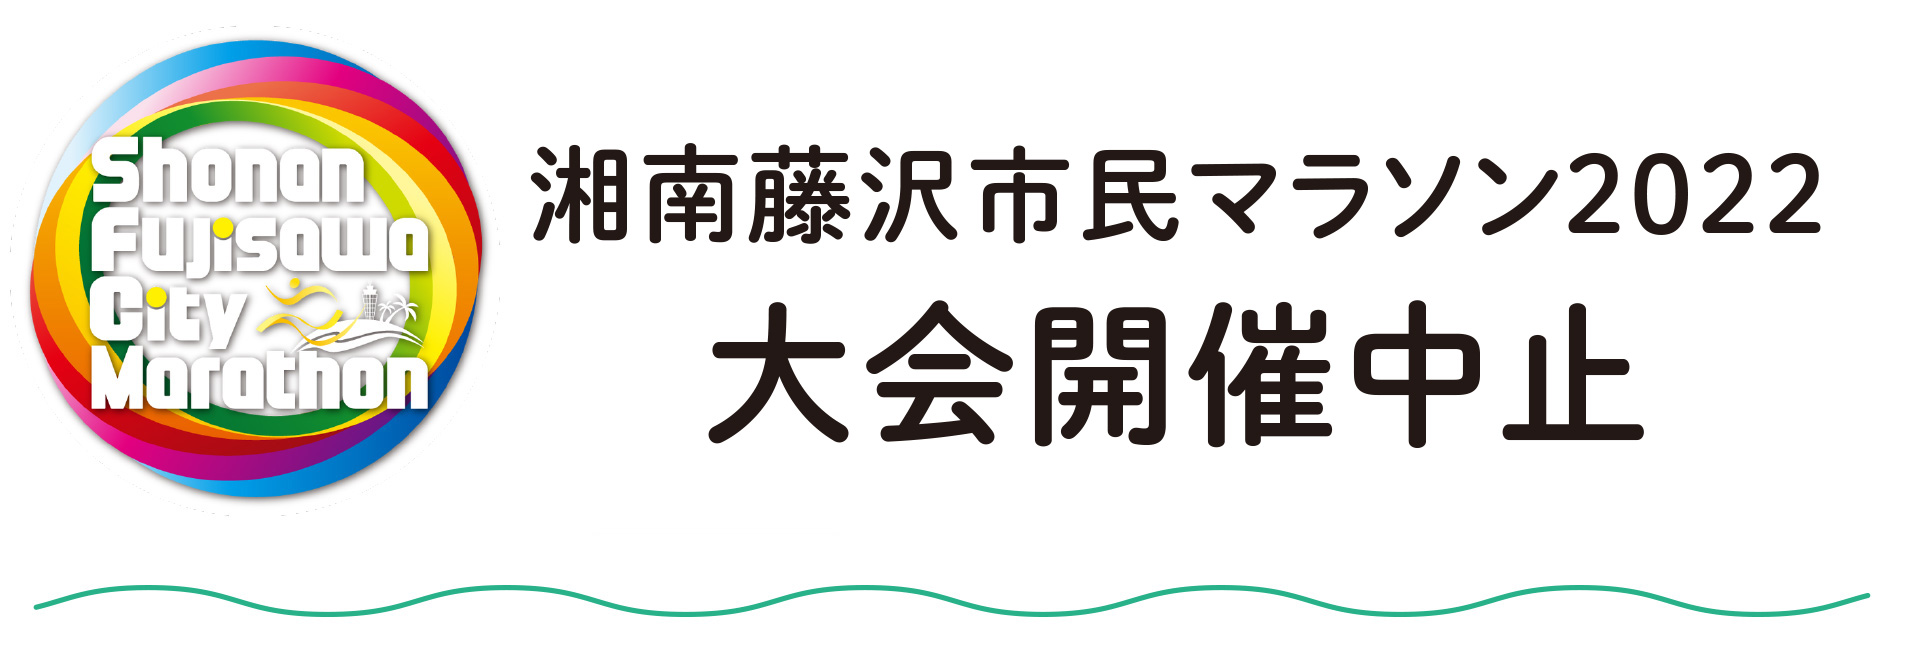 湘南藤沢市民マラソン2022大会開催中止のお知らせ